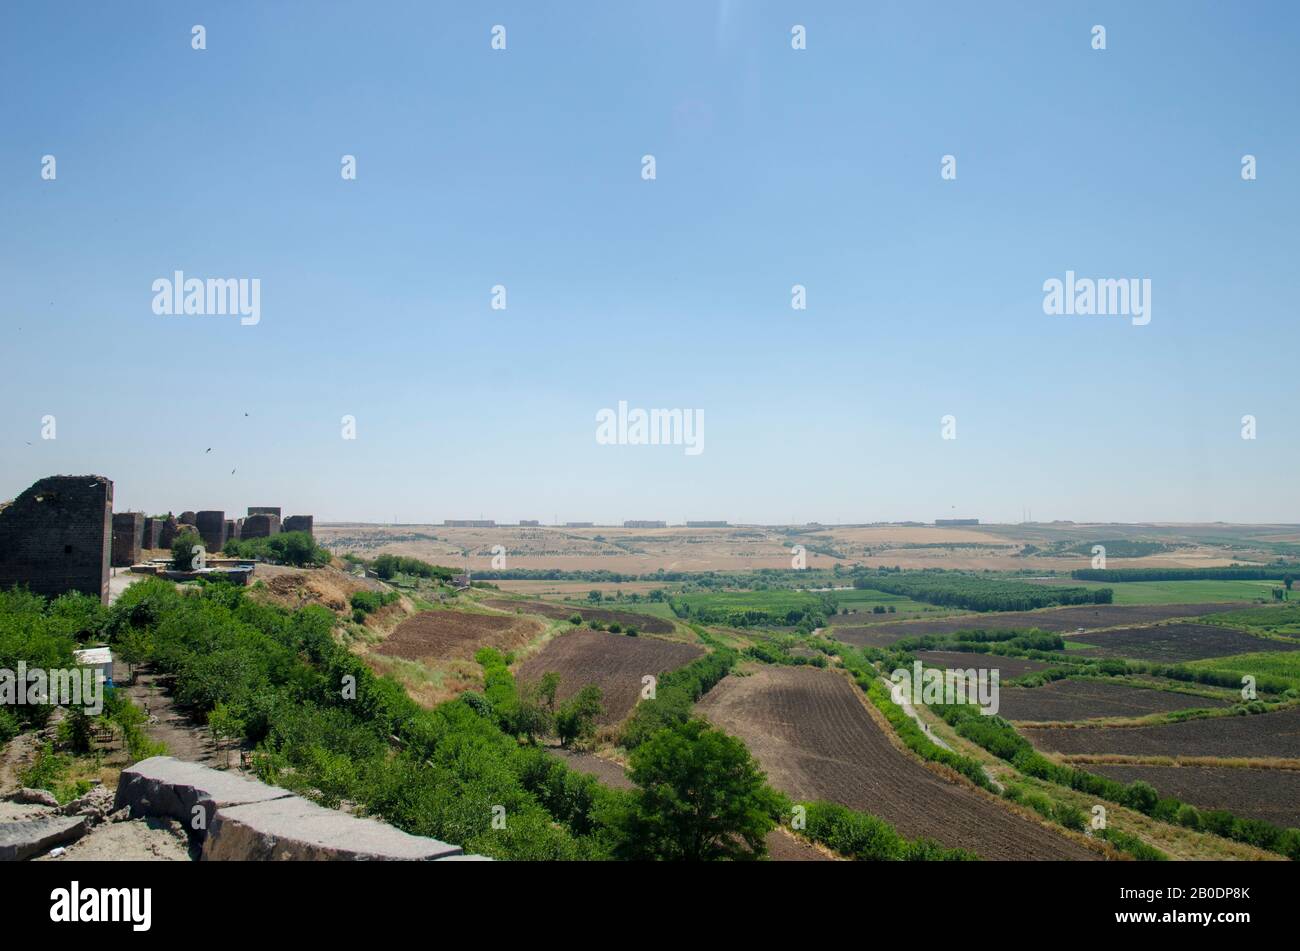 Aerial view of Diyarbakir Stock Photo